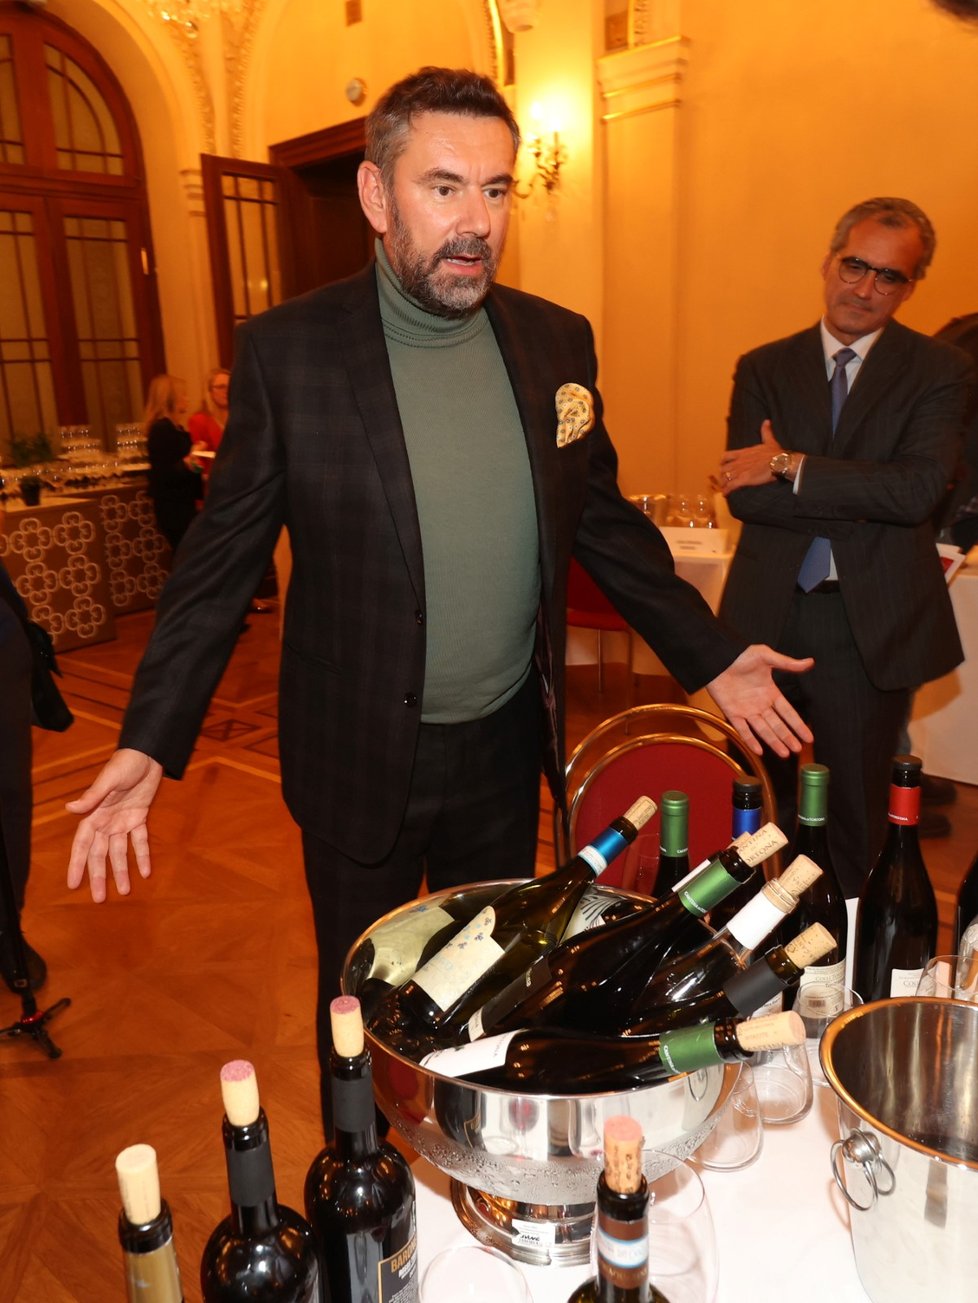 Ochutnávka vín na Žofíně: Emanuele Ridi